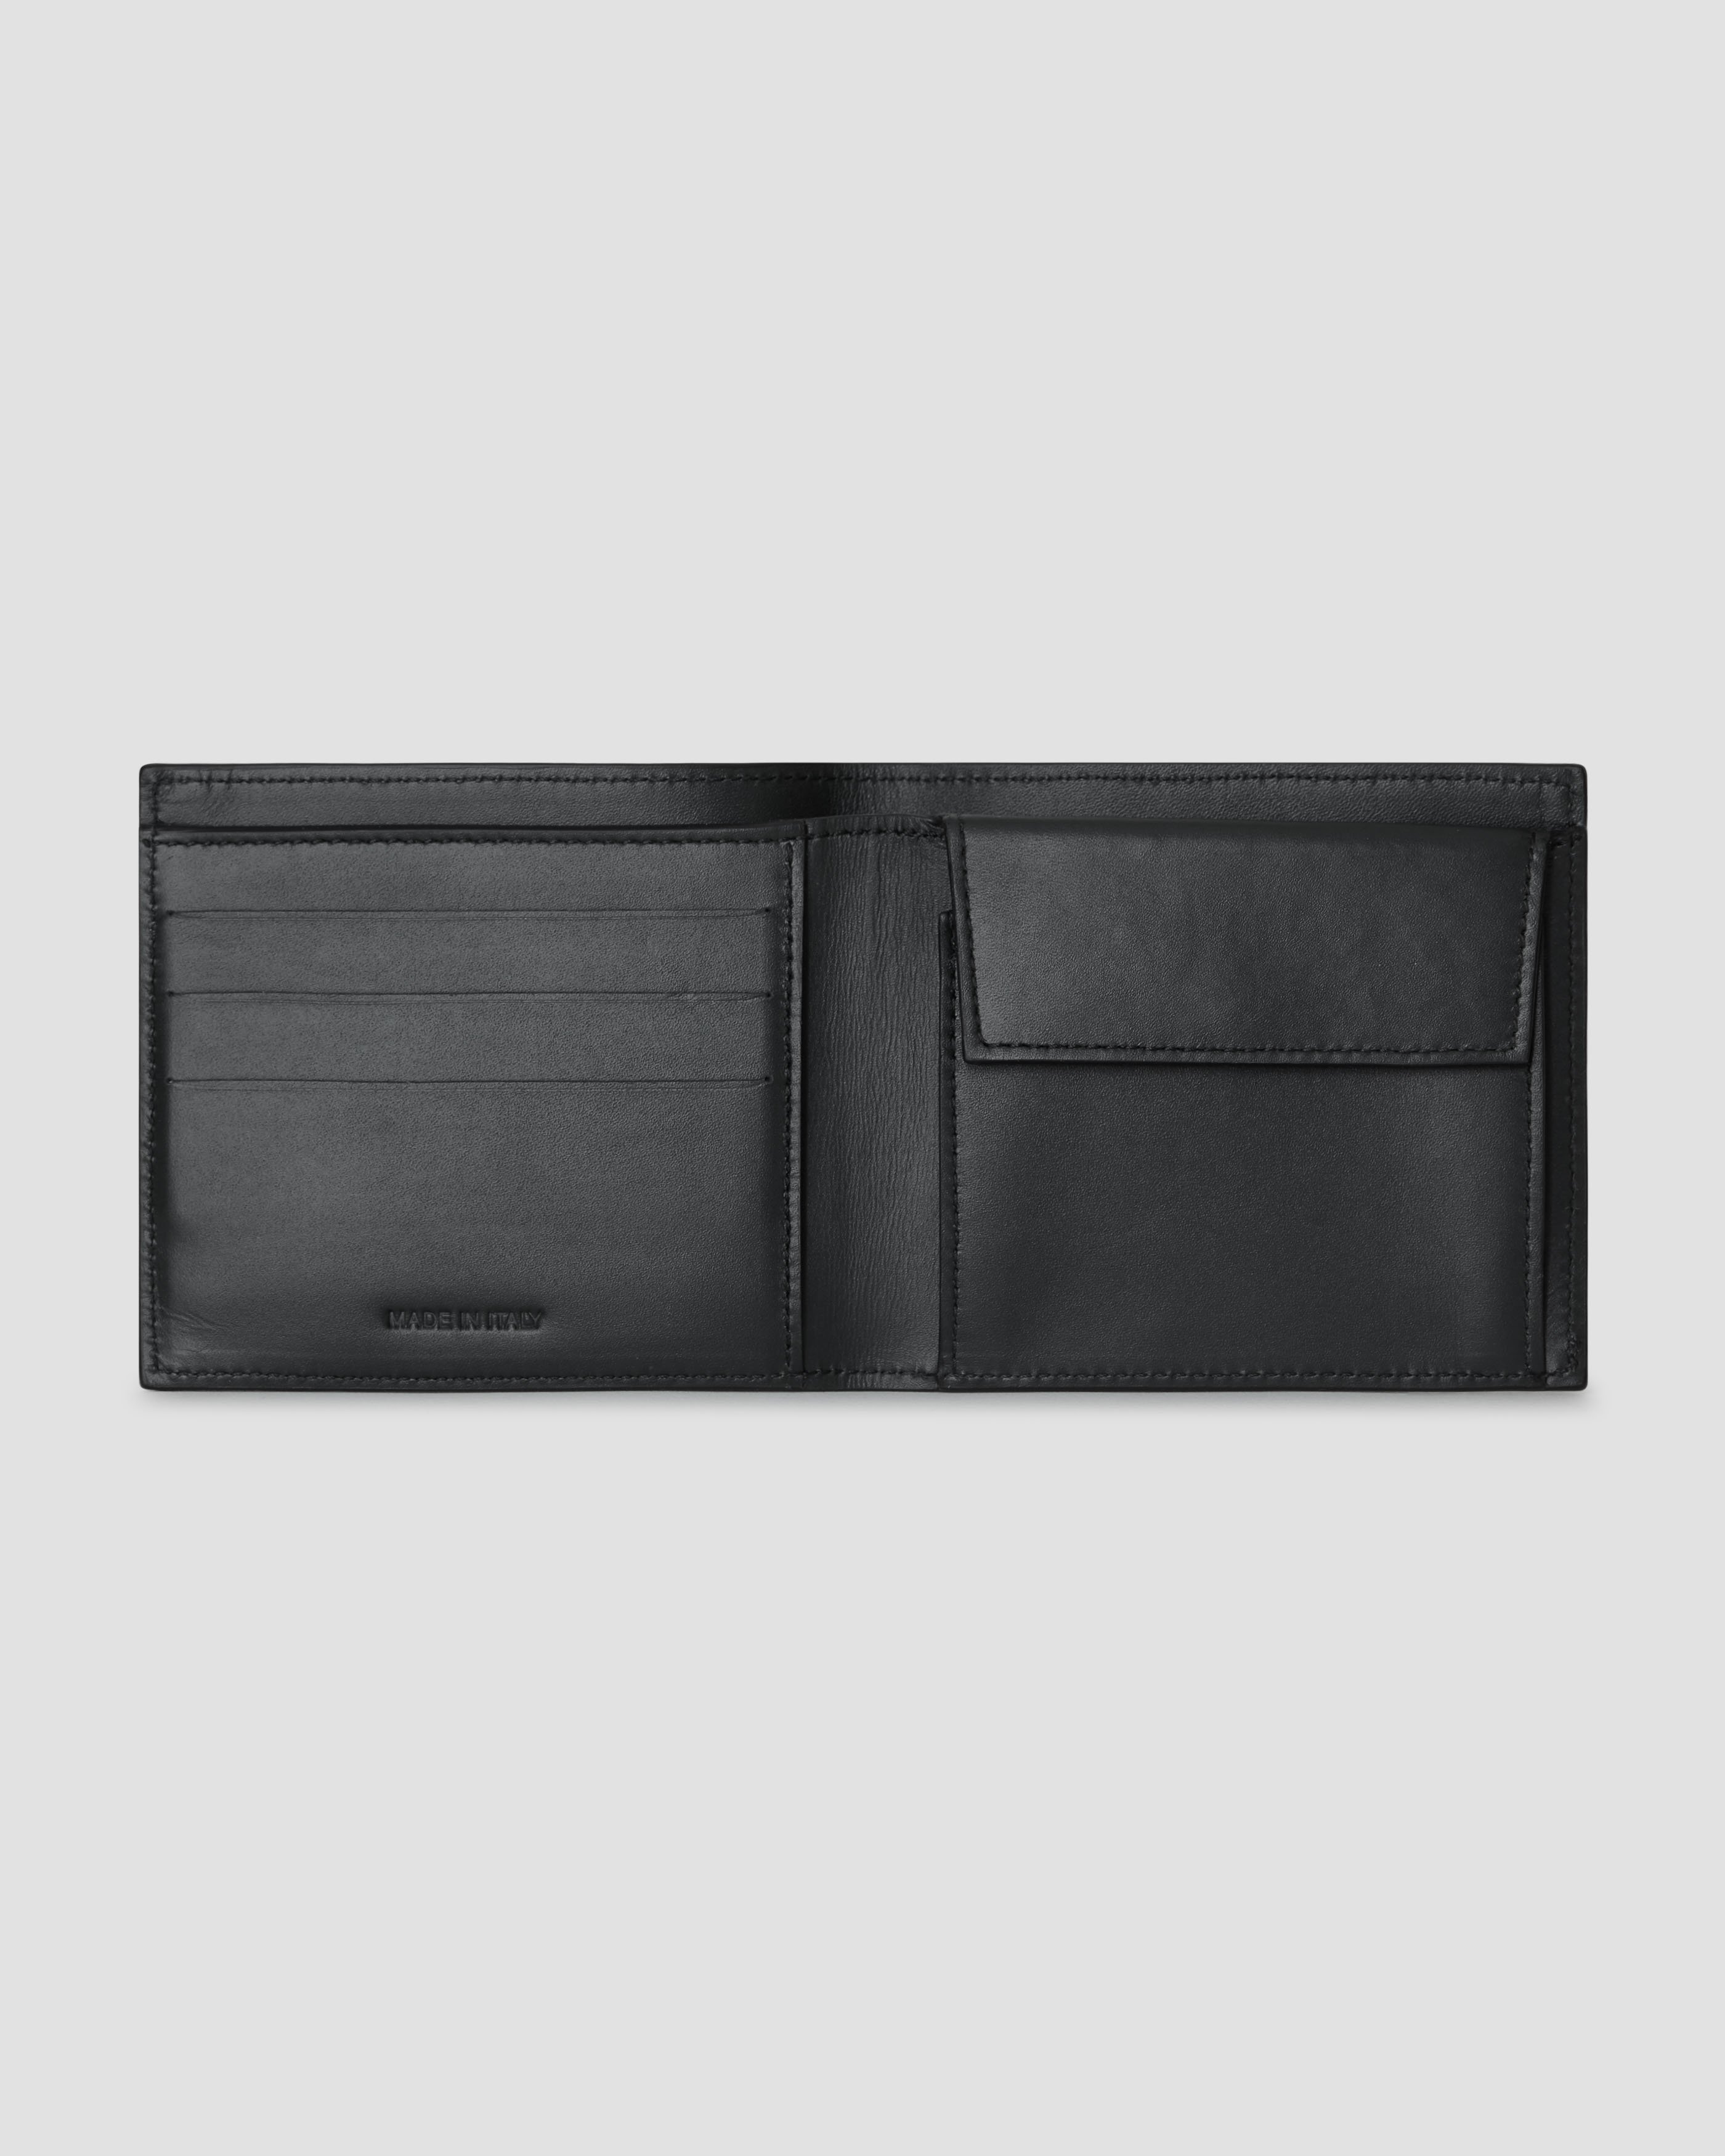 OAMC SYSTEM BL-FOLD WALLET 財布 black 小物 クリアランス超高品質